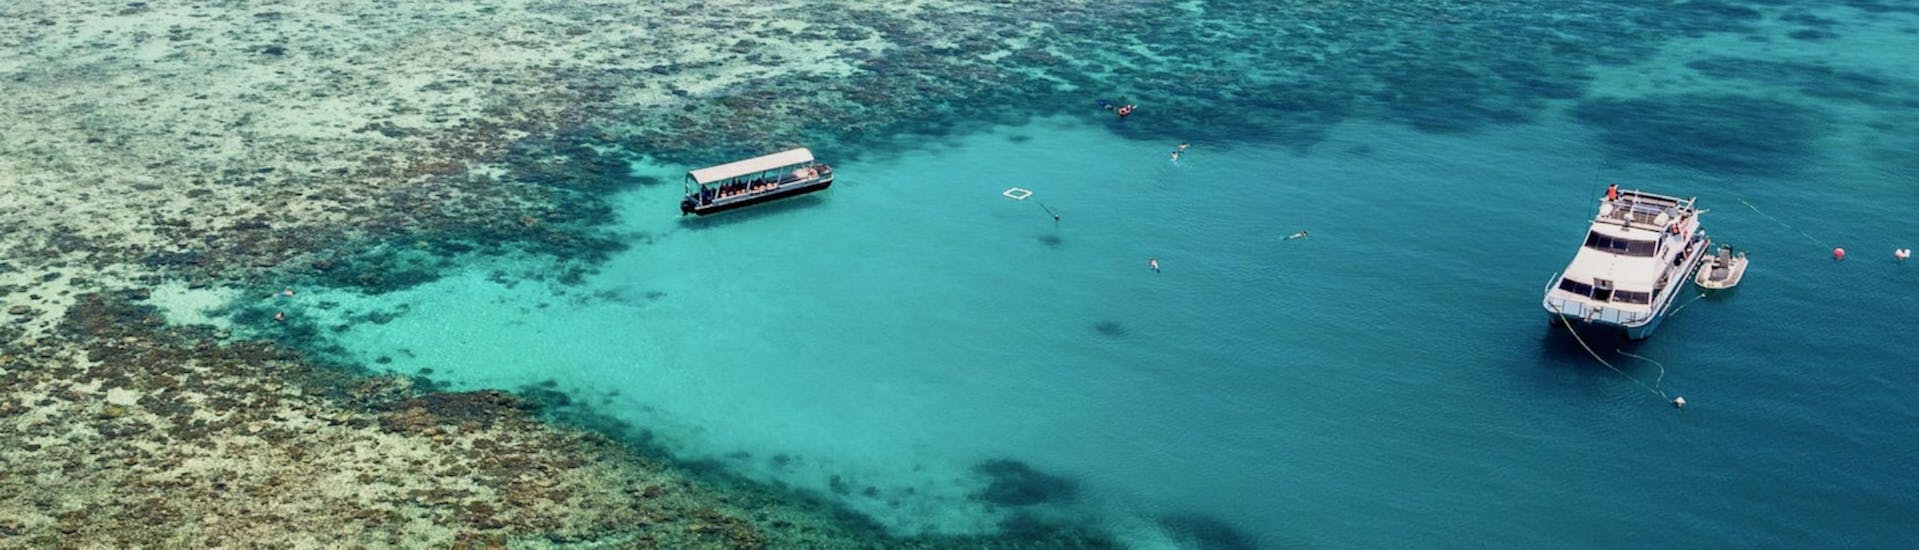 Bootstour - Great Barrier Reef mit Schwimmen & Wildtierbeobachtung.